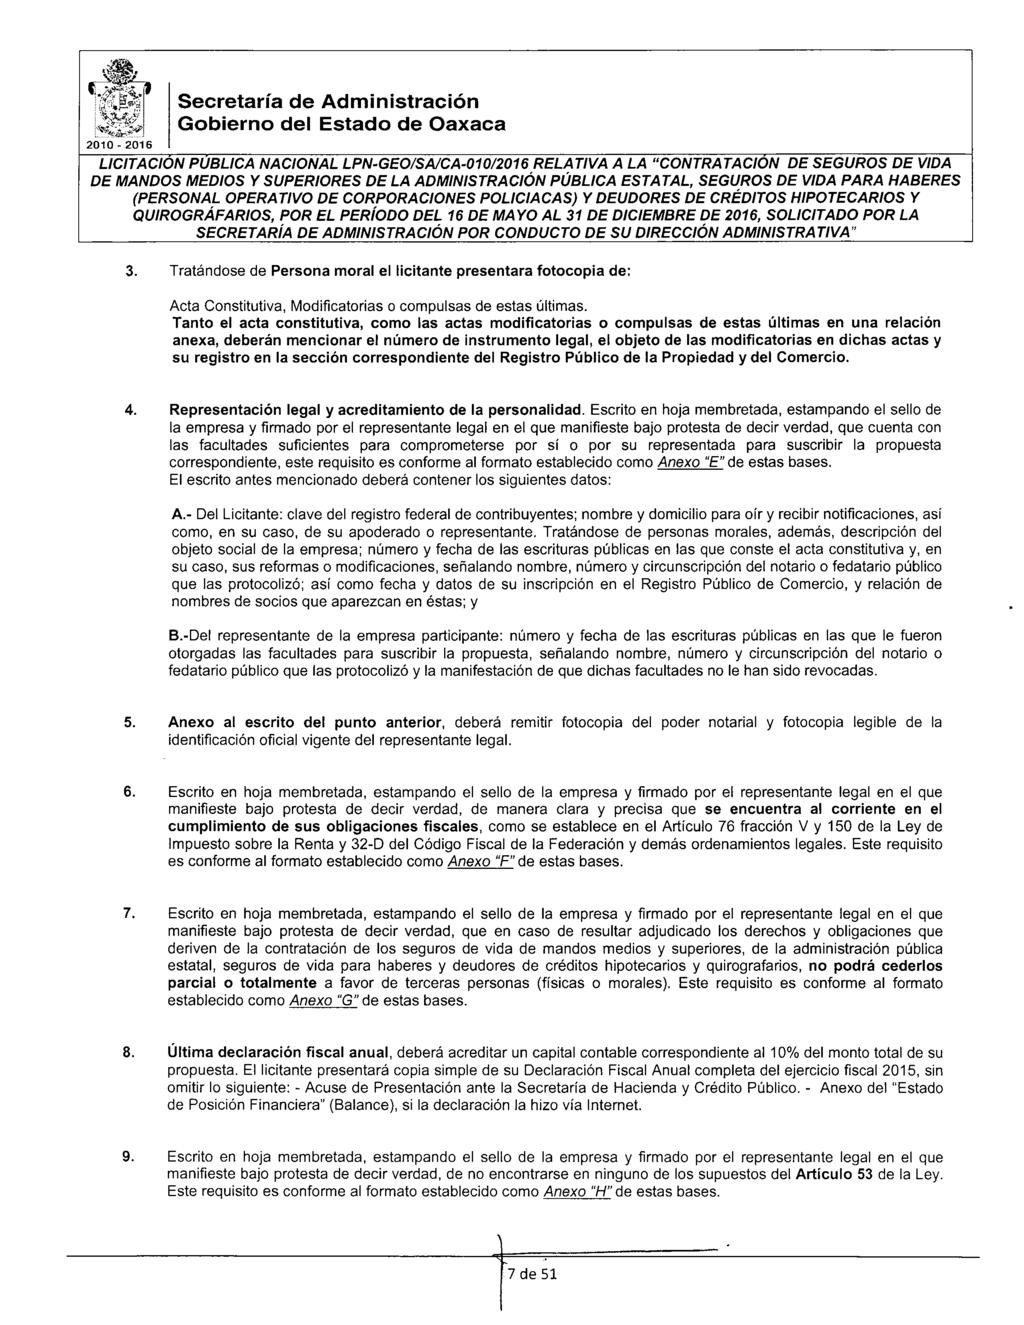 Gbiern del Estad de Oaxaca 2010-2016 LICITACION PUBLICA NACIONAL LPN-GEO/SAICA-01012016 RELATIVA A LA "CONTRATACION DE SEGUROS DE VIDA 3.